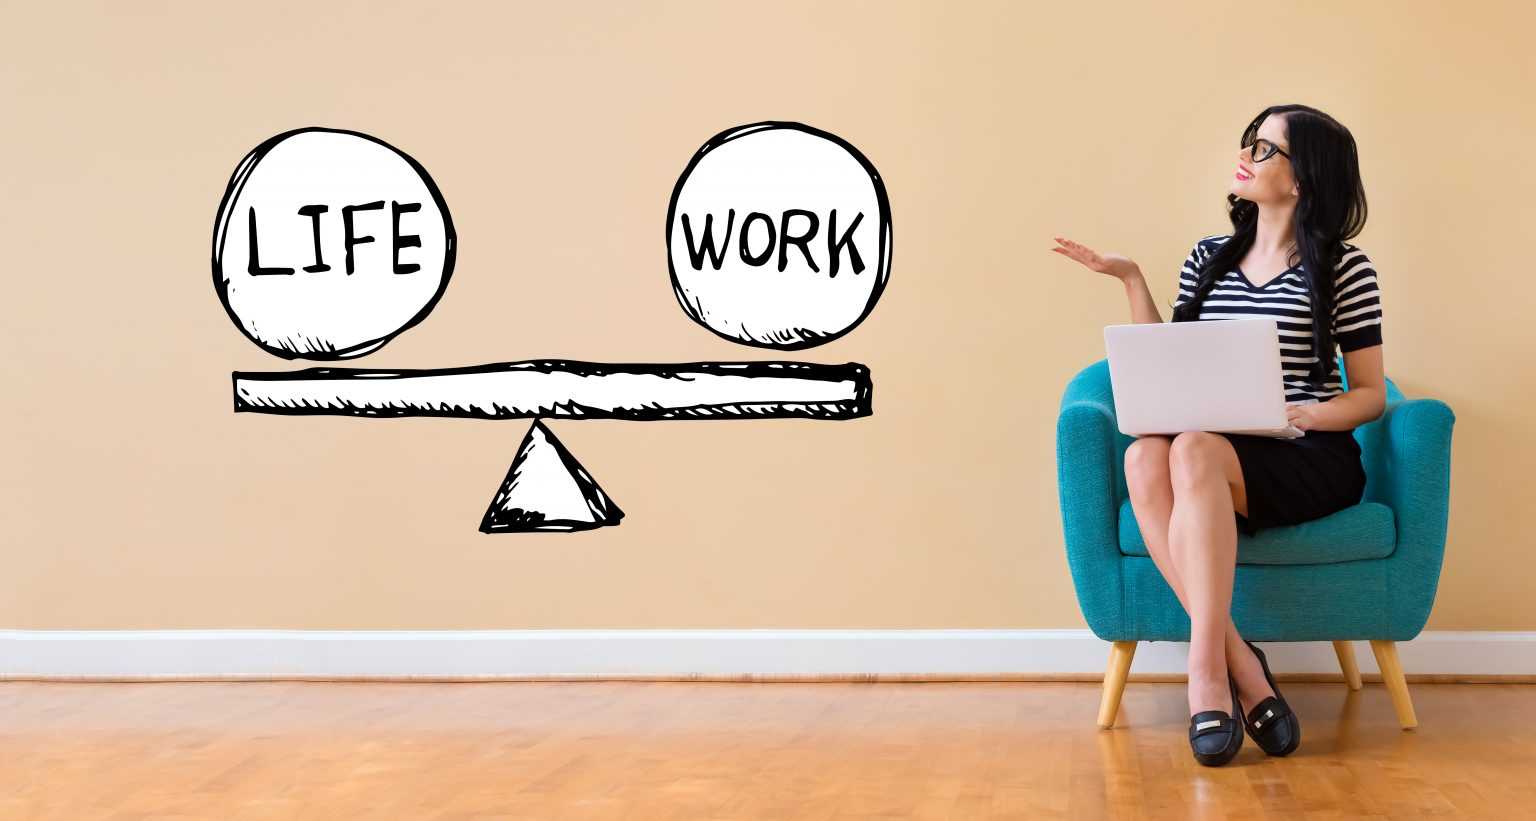 Long life work. Work-Life Balance. Work Life баланс что это. Working Balance woman. Баланс работы фото высокое качество.